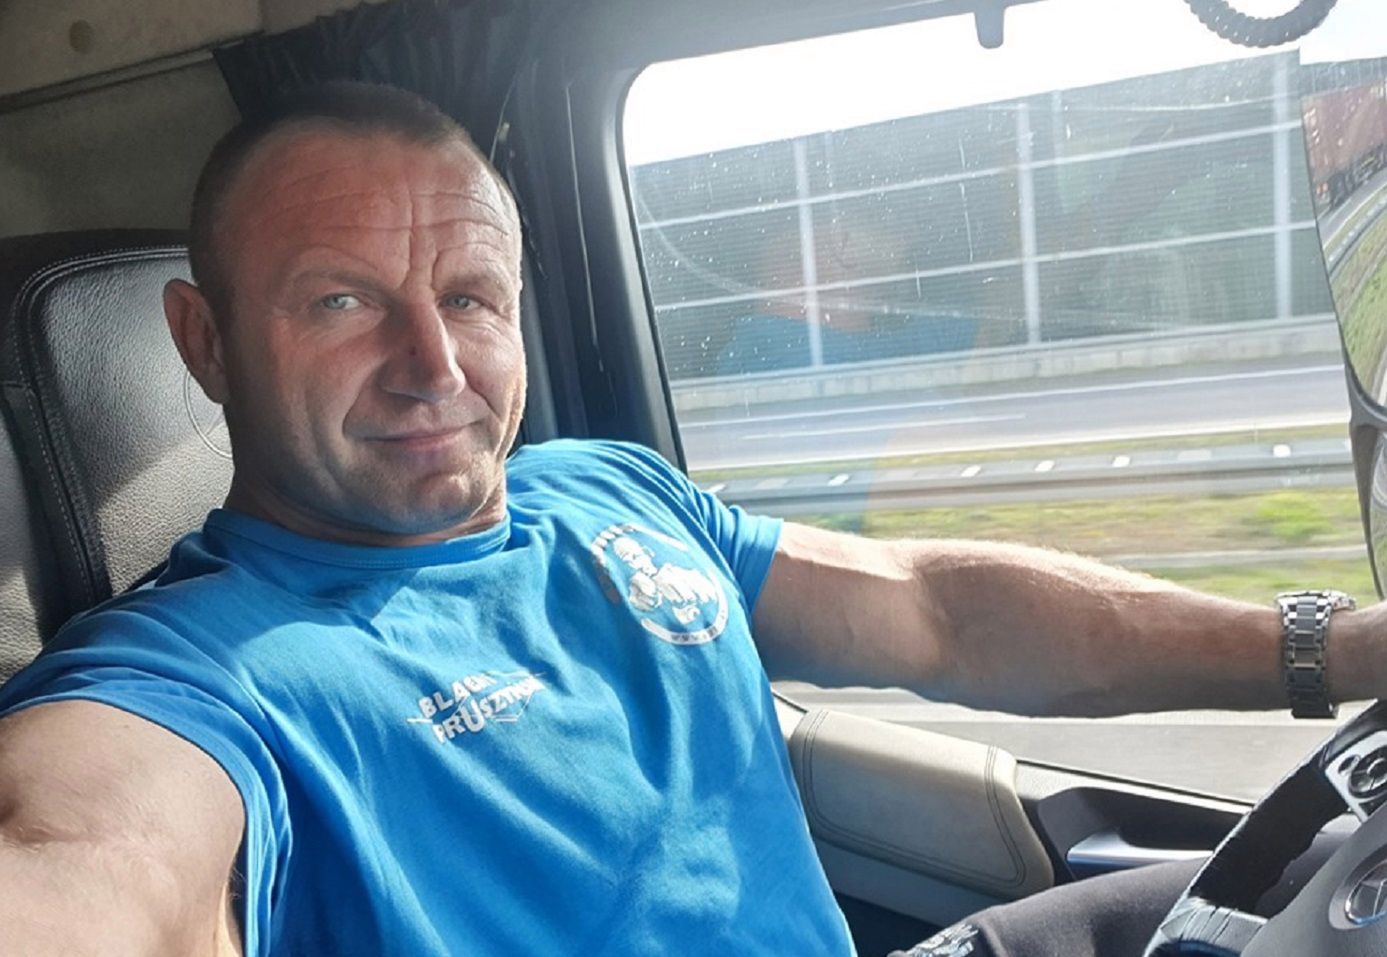 Mariusz Pudzianowski wrzucił selfie z auta. Nagle ktoś dostrzegł wpadkę